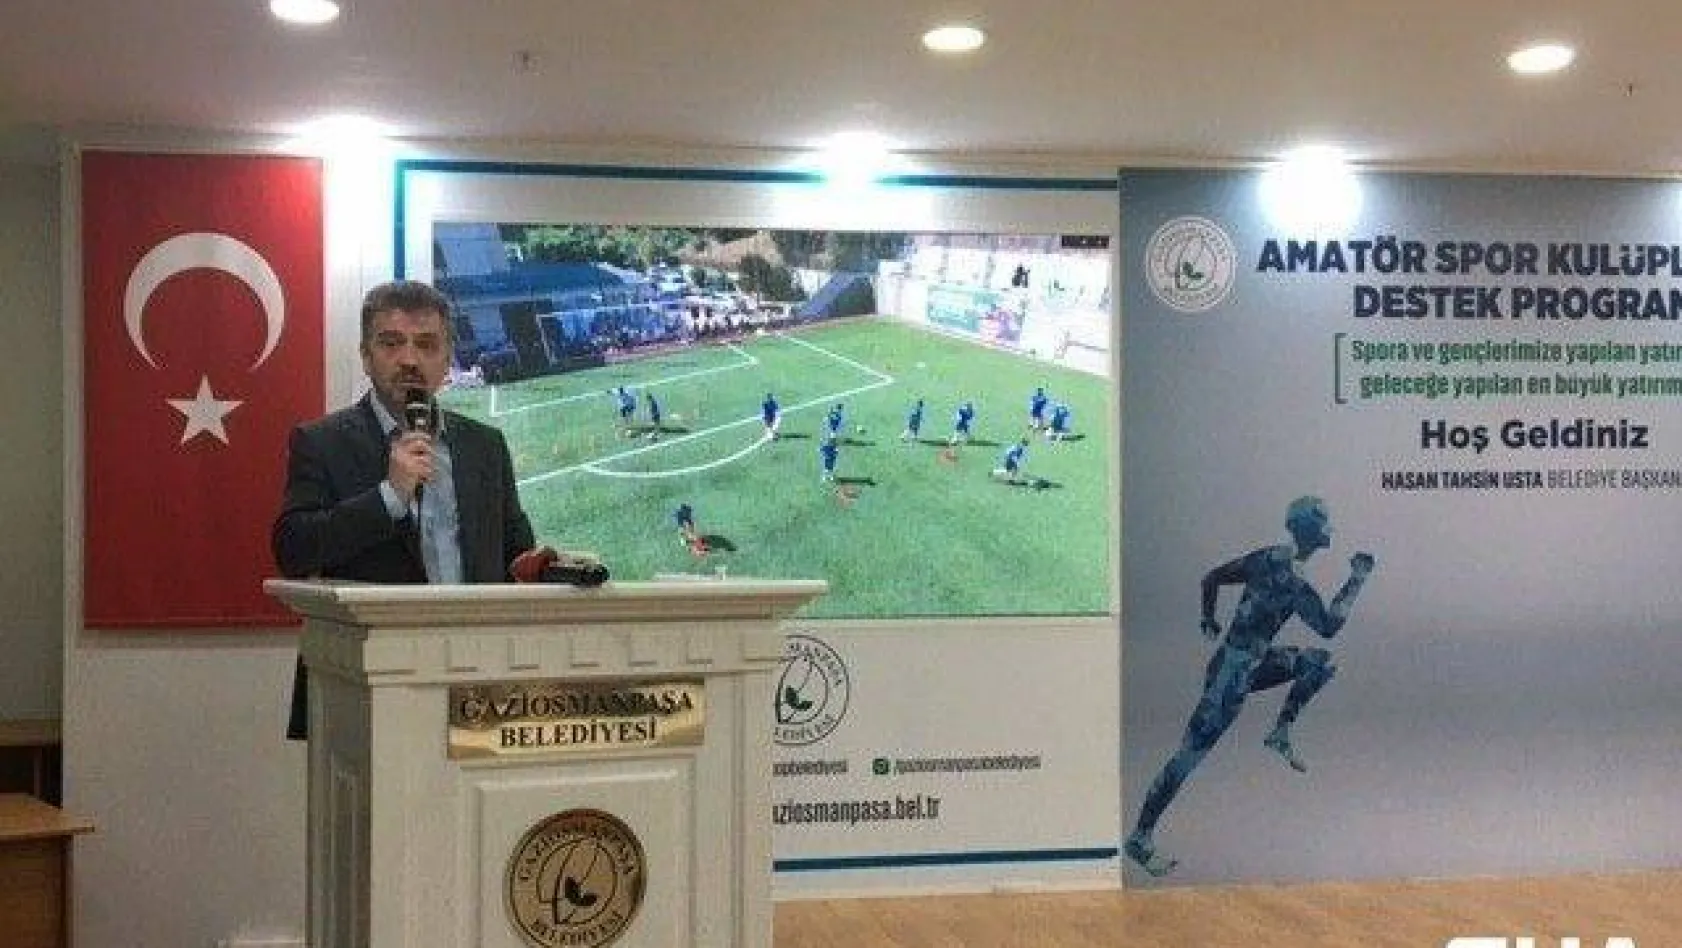 Gaziosmanpaşa'da 42 amatör spor kulübüne nakdi yardım yapıldı